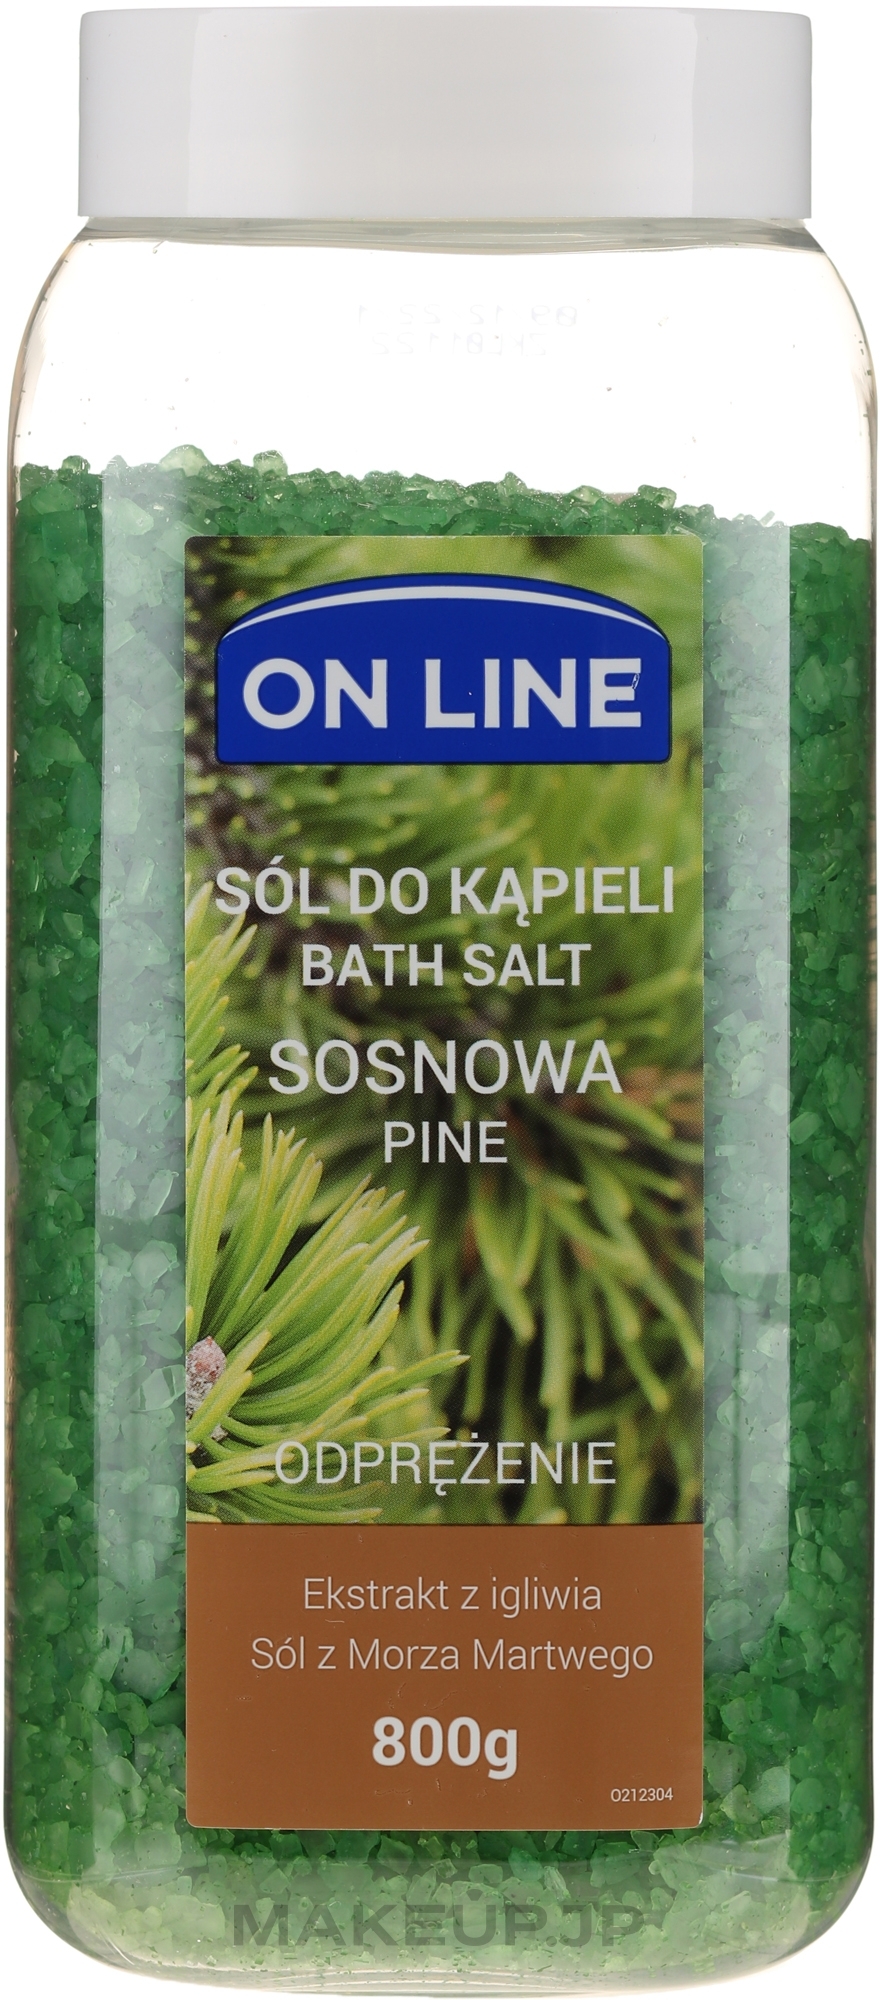 Bath Salt "Pine Tree" - On Line Pine Tree Bath Salt — photo 800 g